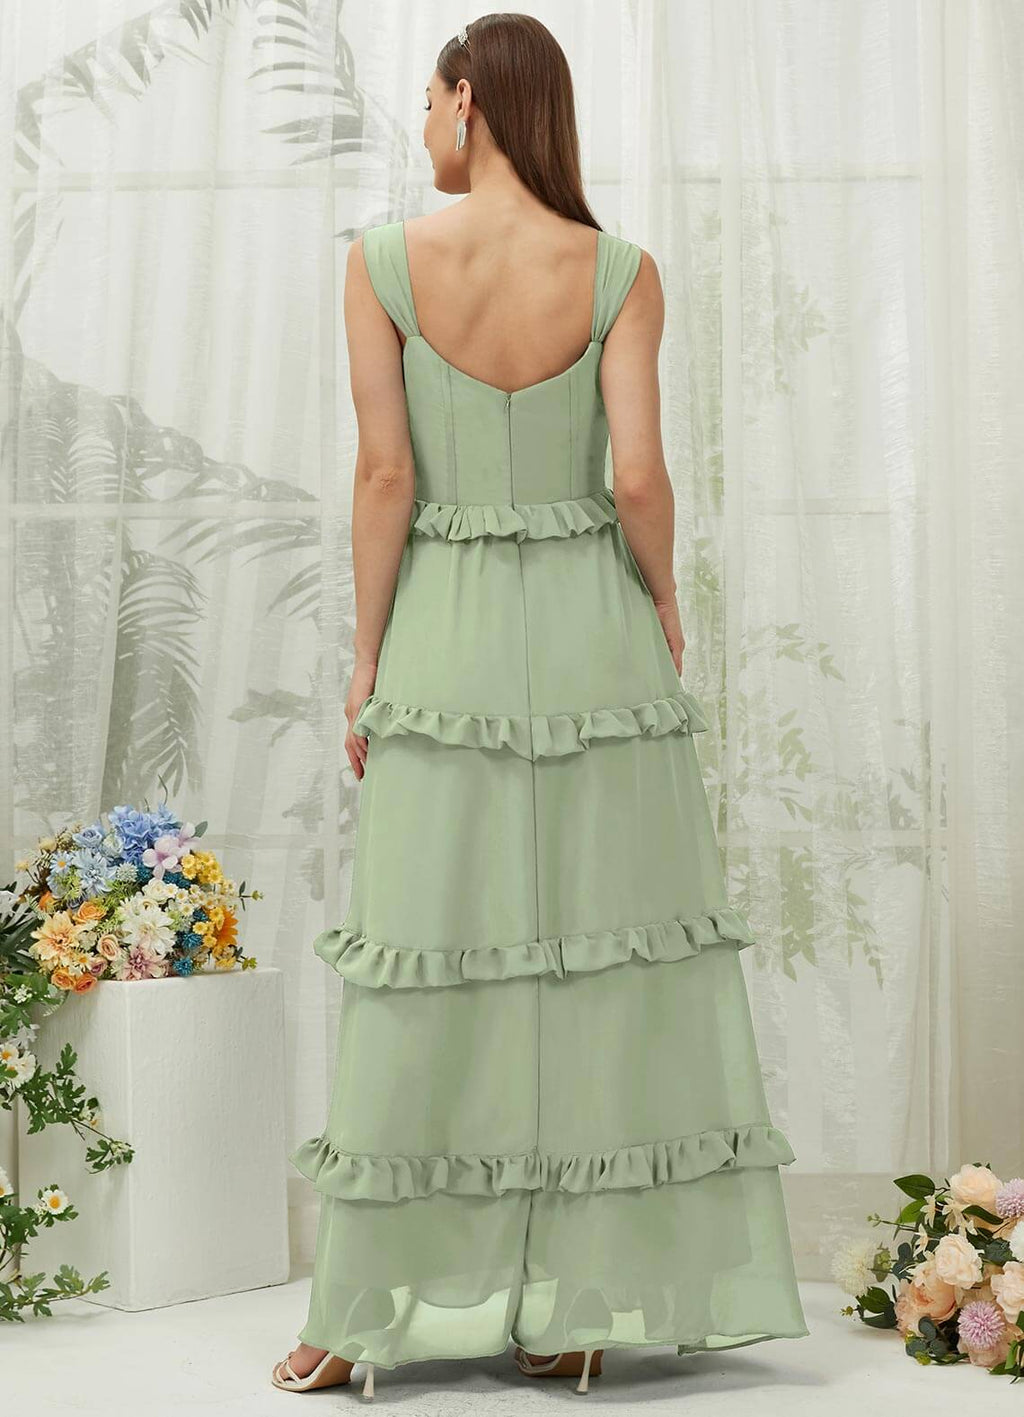 NZ Bridal Sage Green Sweetheart Chiffon Maxi Bridesmaid Dress With Pocket R3701 Sloane a